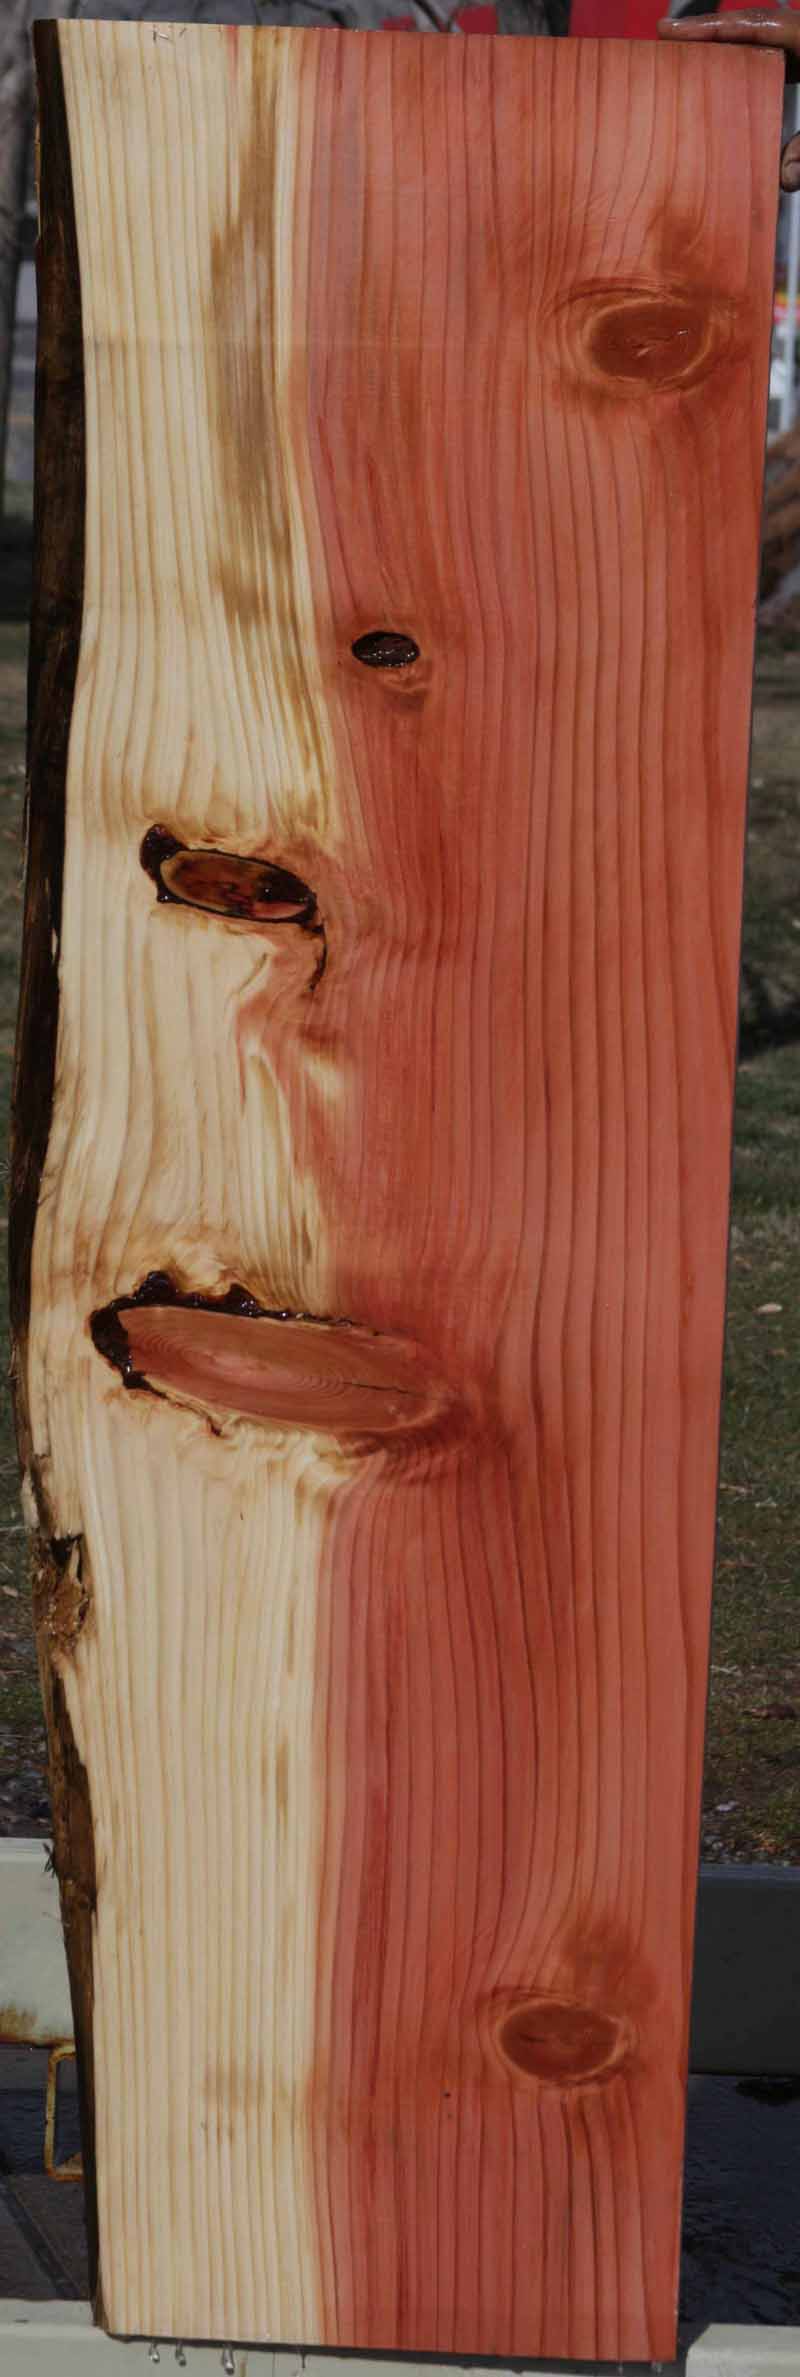 Sequoia Live Edge Lumber